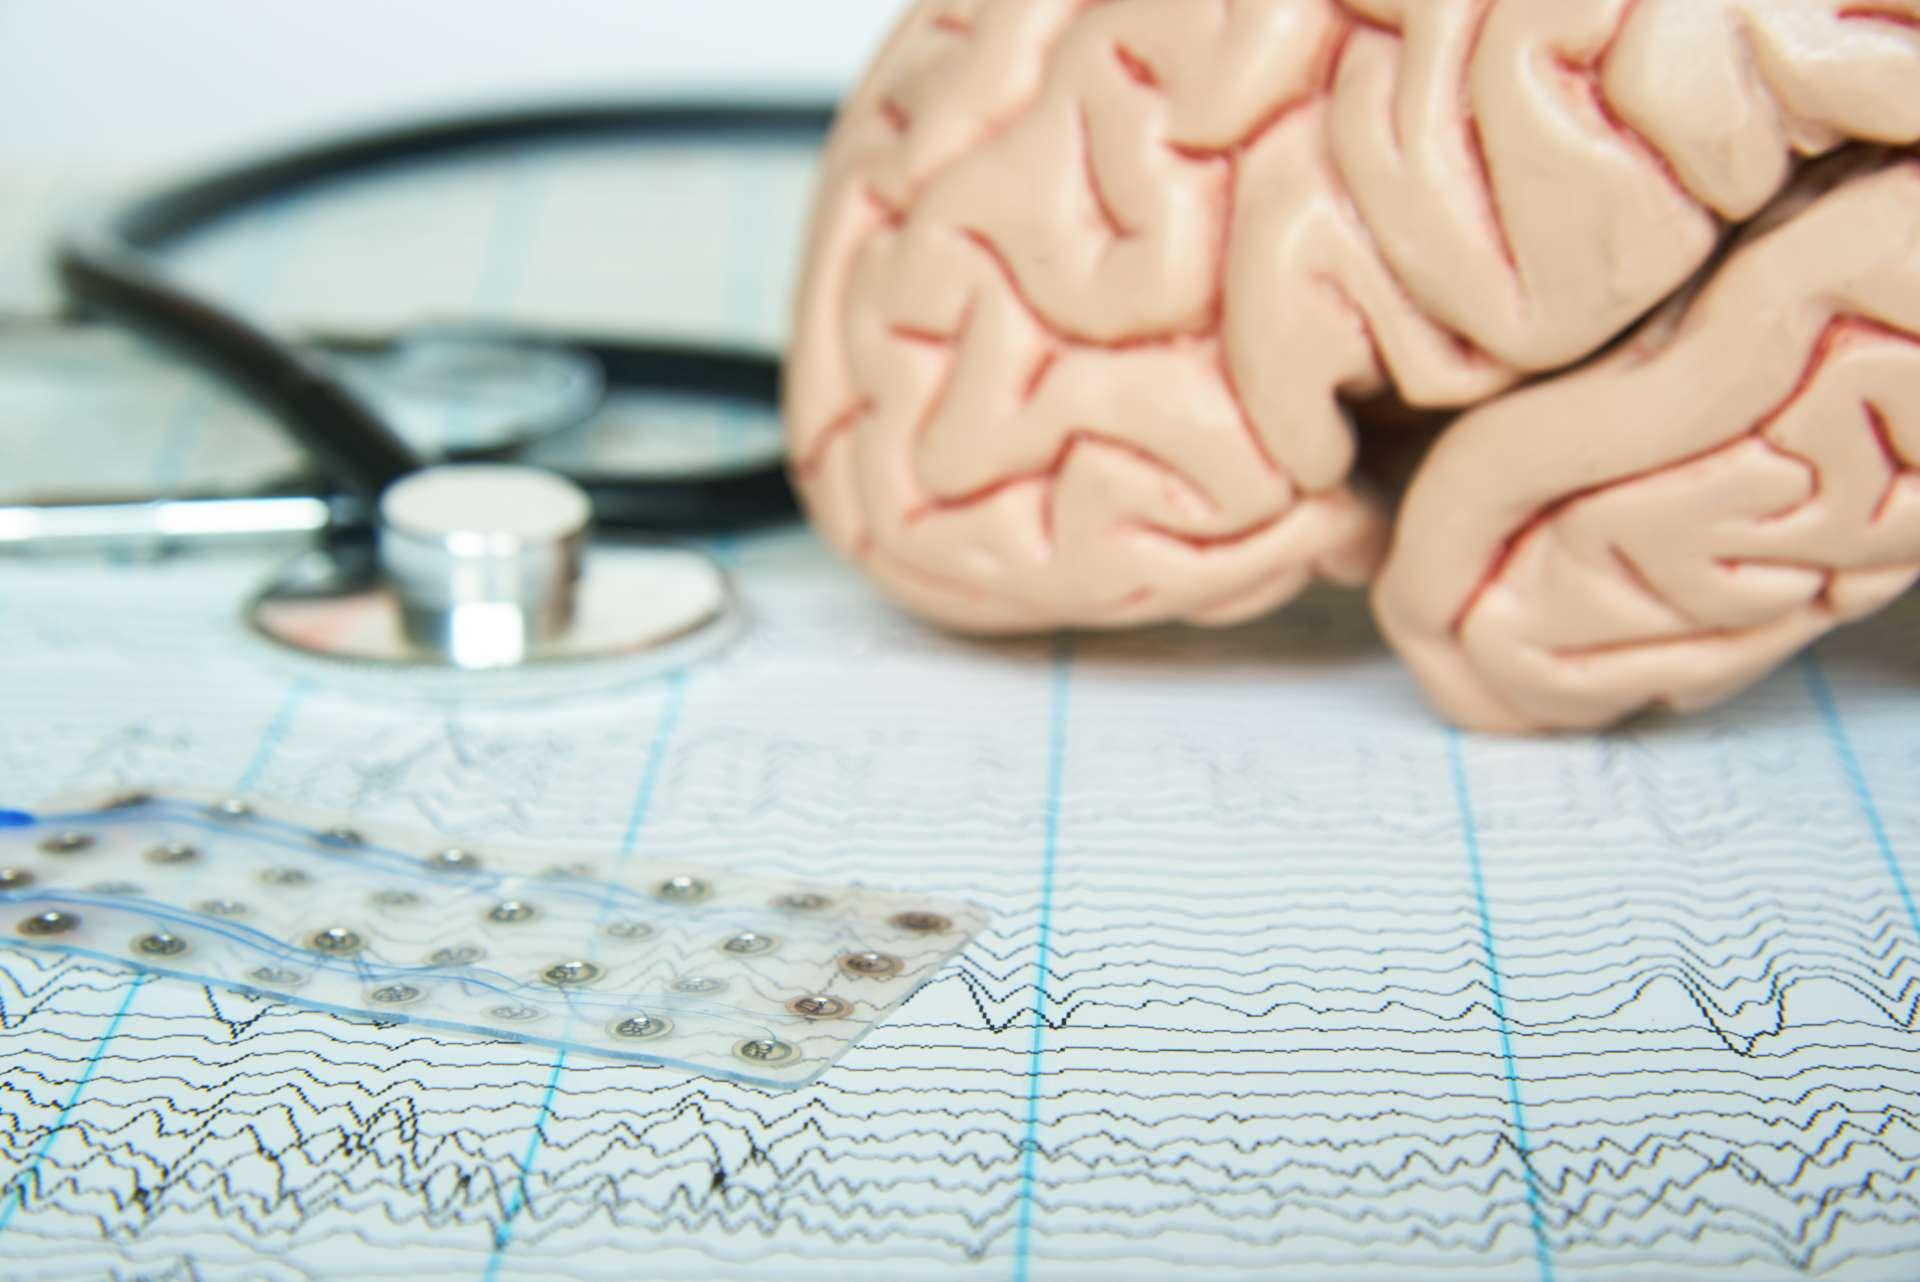 Subdurales Elektrodengitter auf Elektroenzephalographiepapier. Modell des menschlichen Gehirns und ein schwarzes Stethoskop im Hintergrund.